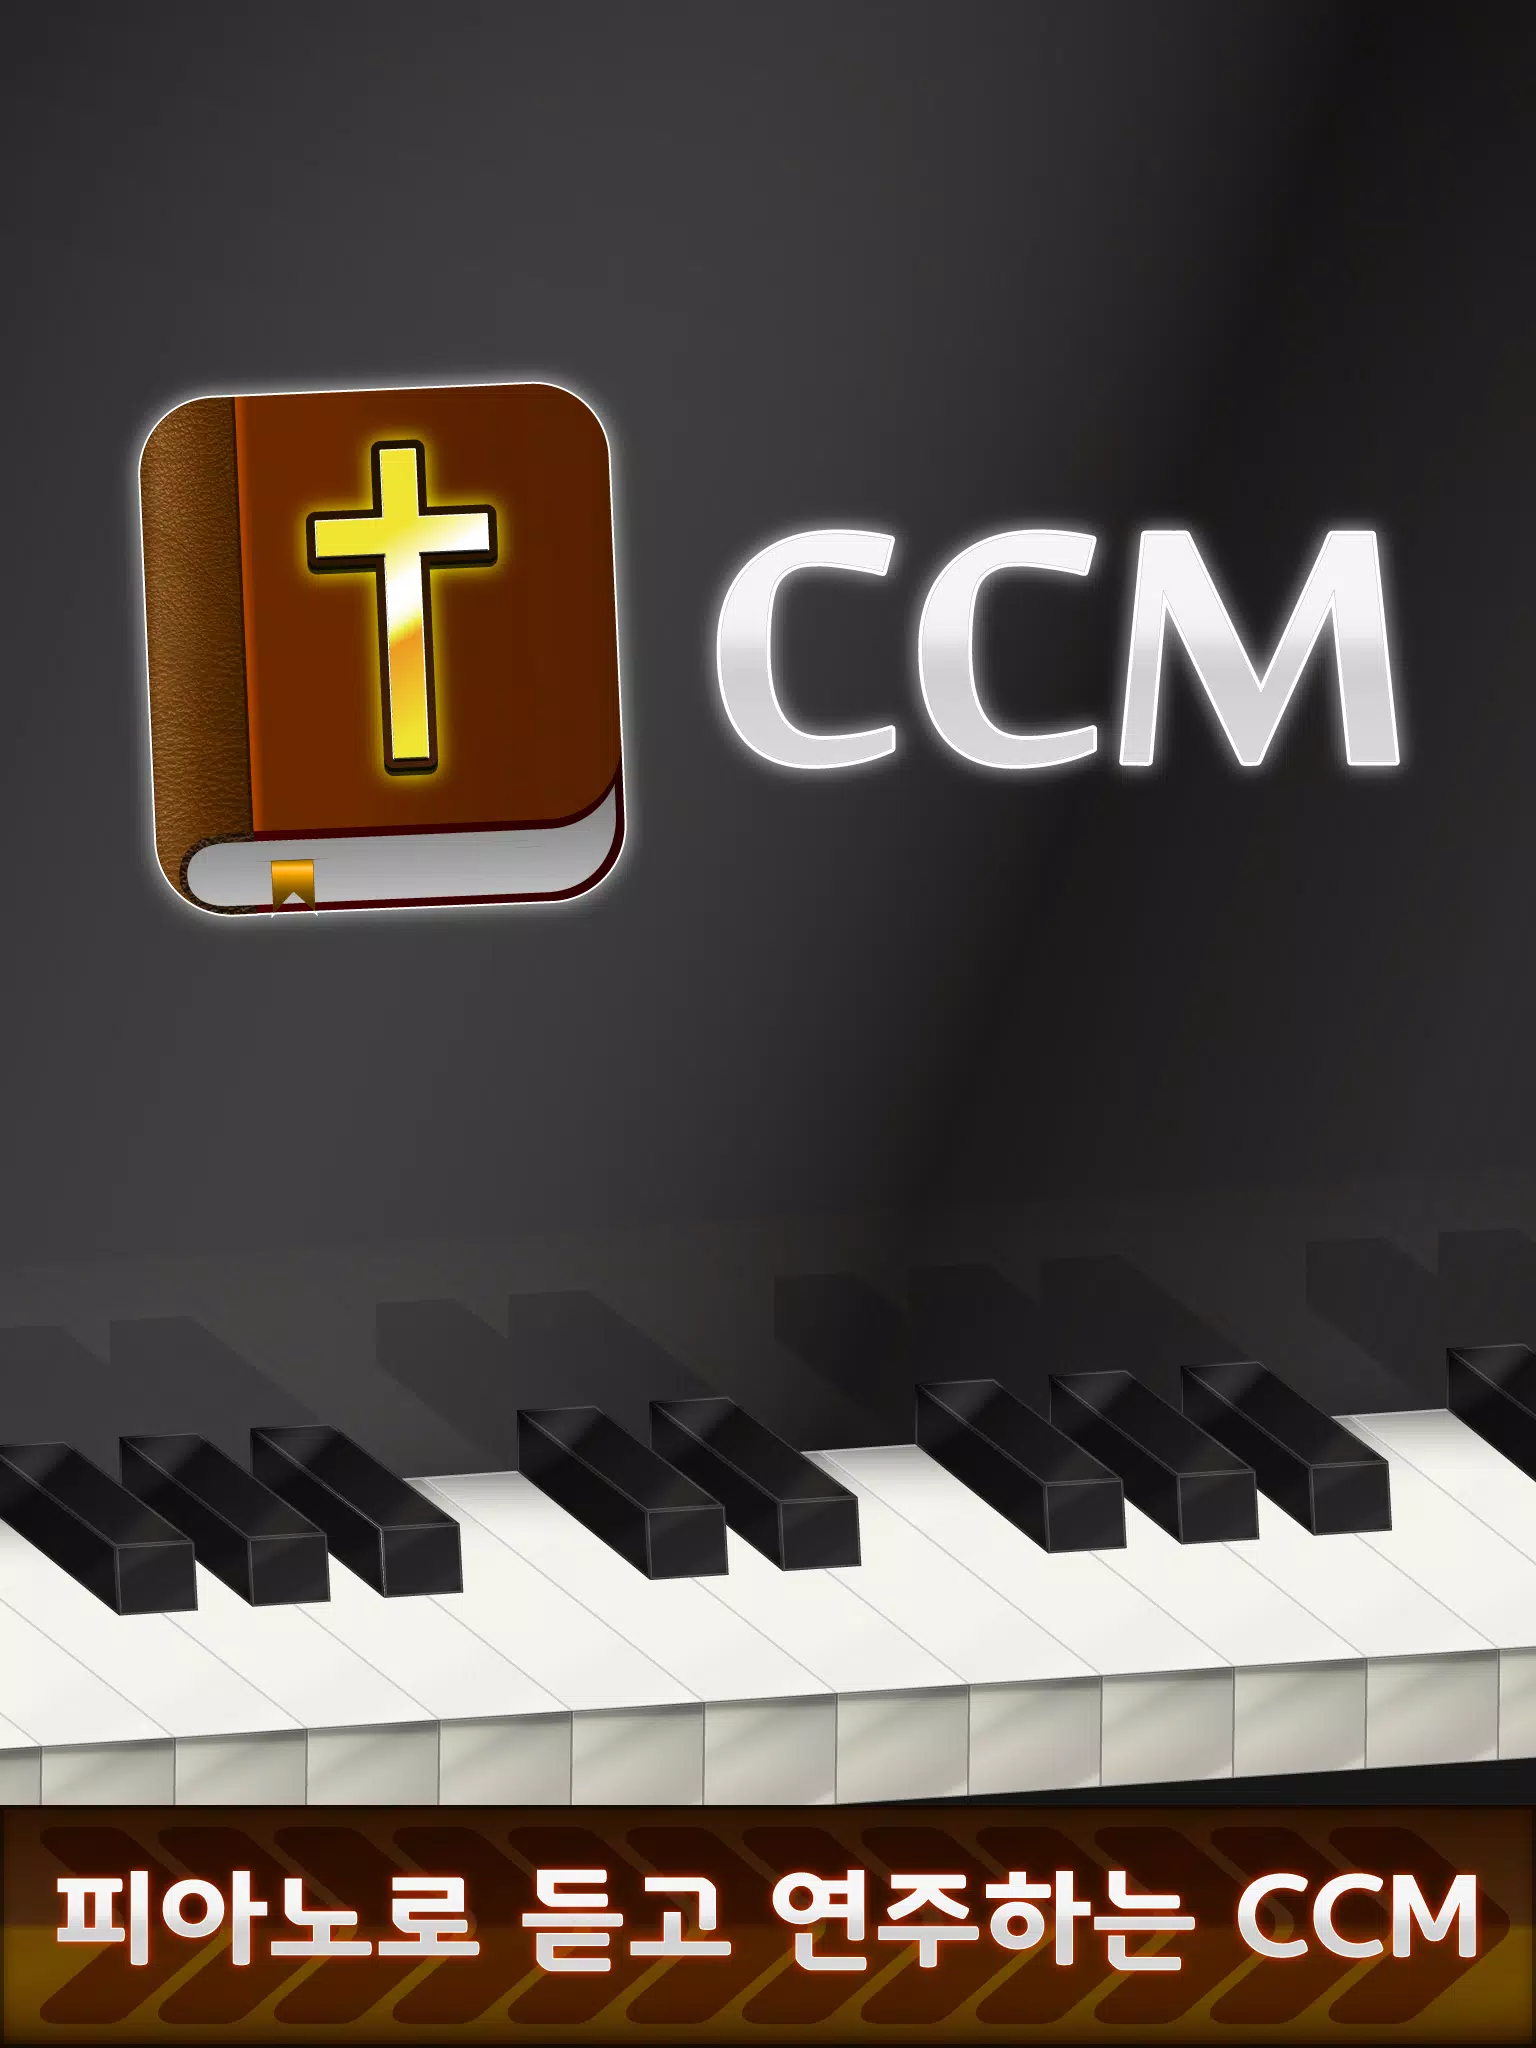 Baixar a última versão do Virtual Piano grátis em Português no CCM - CCM